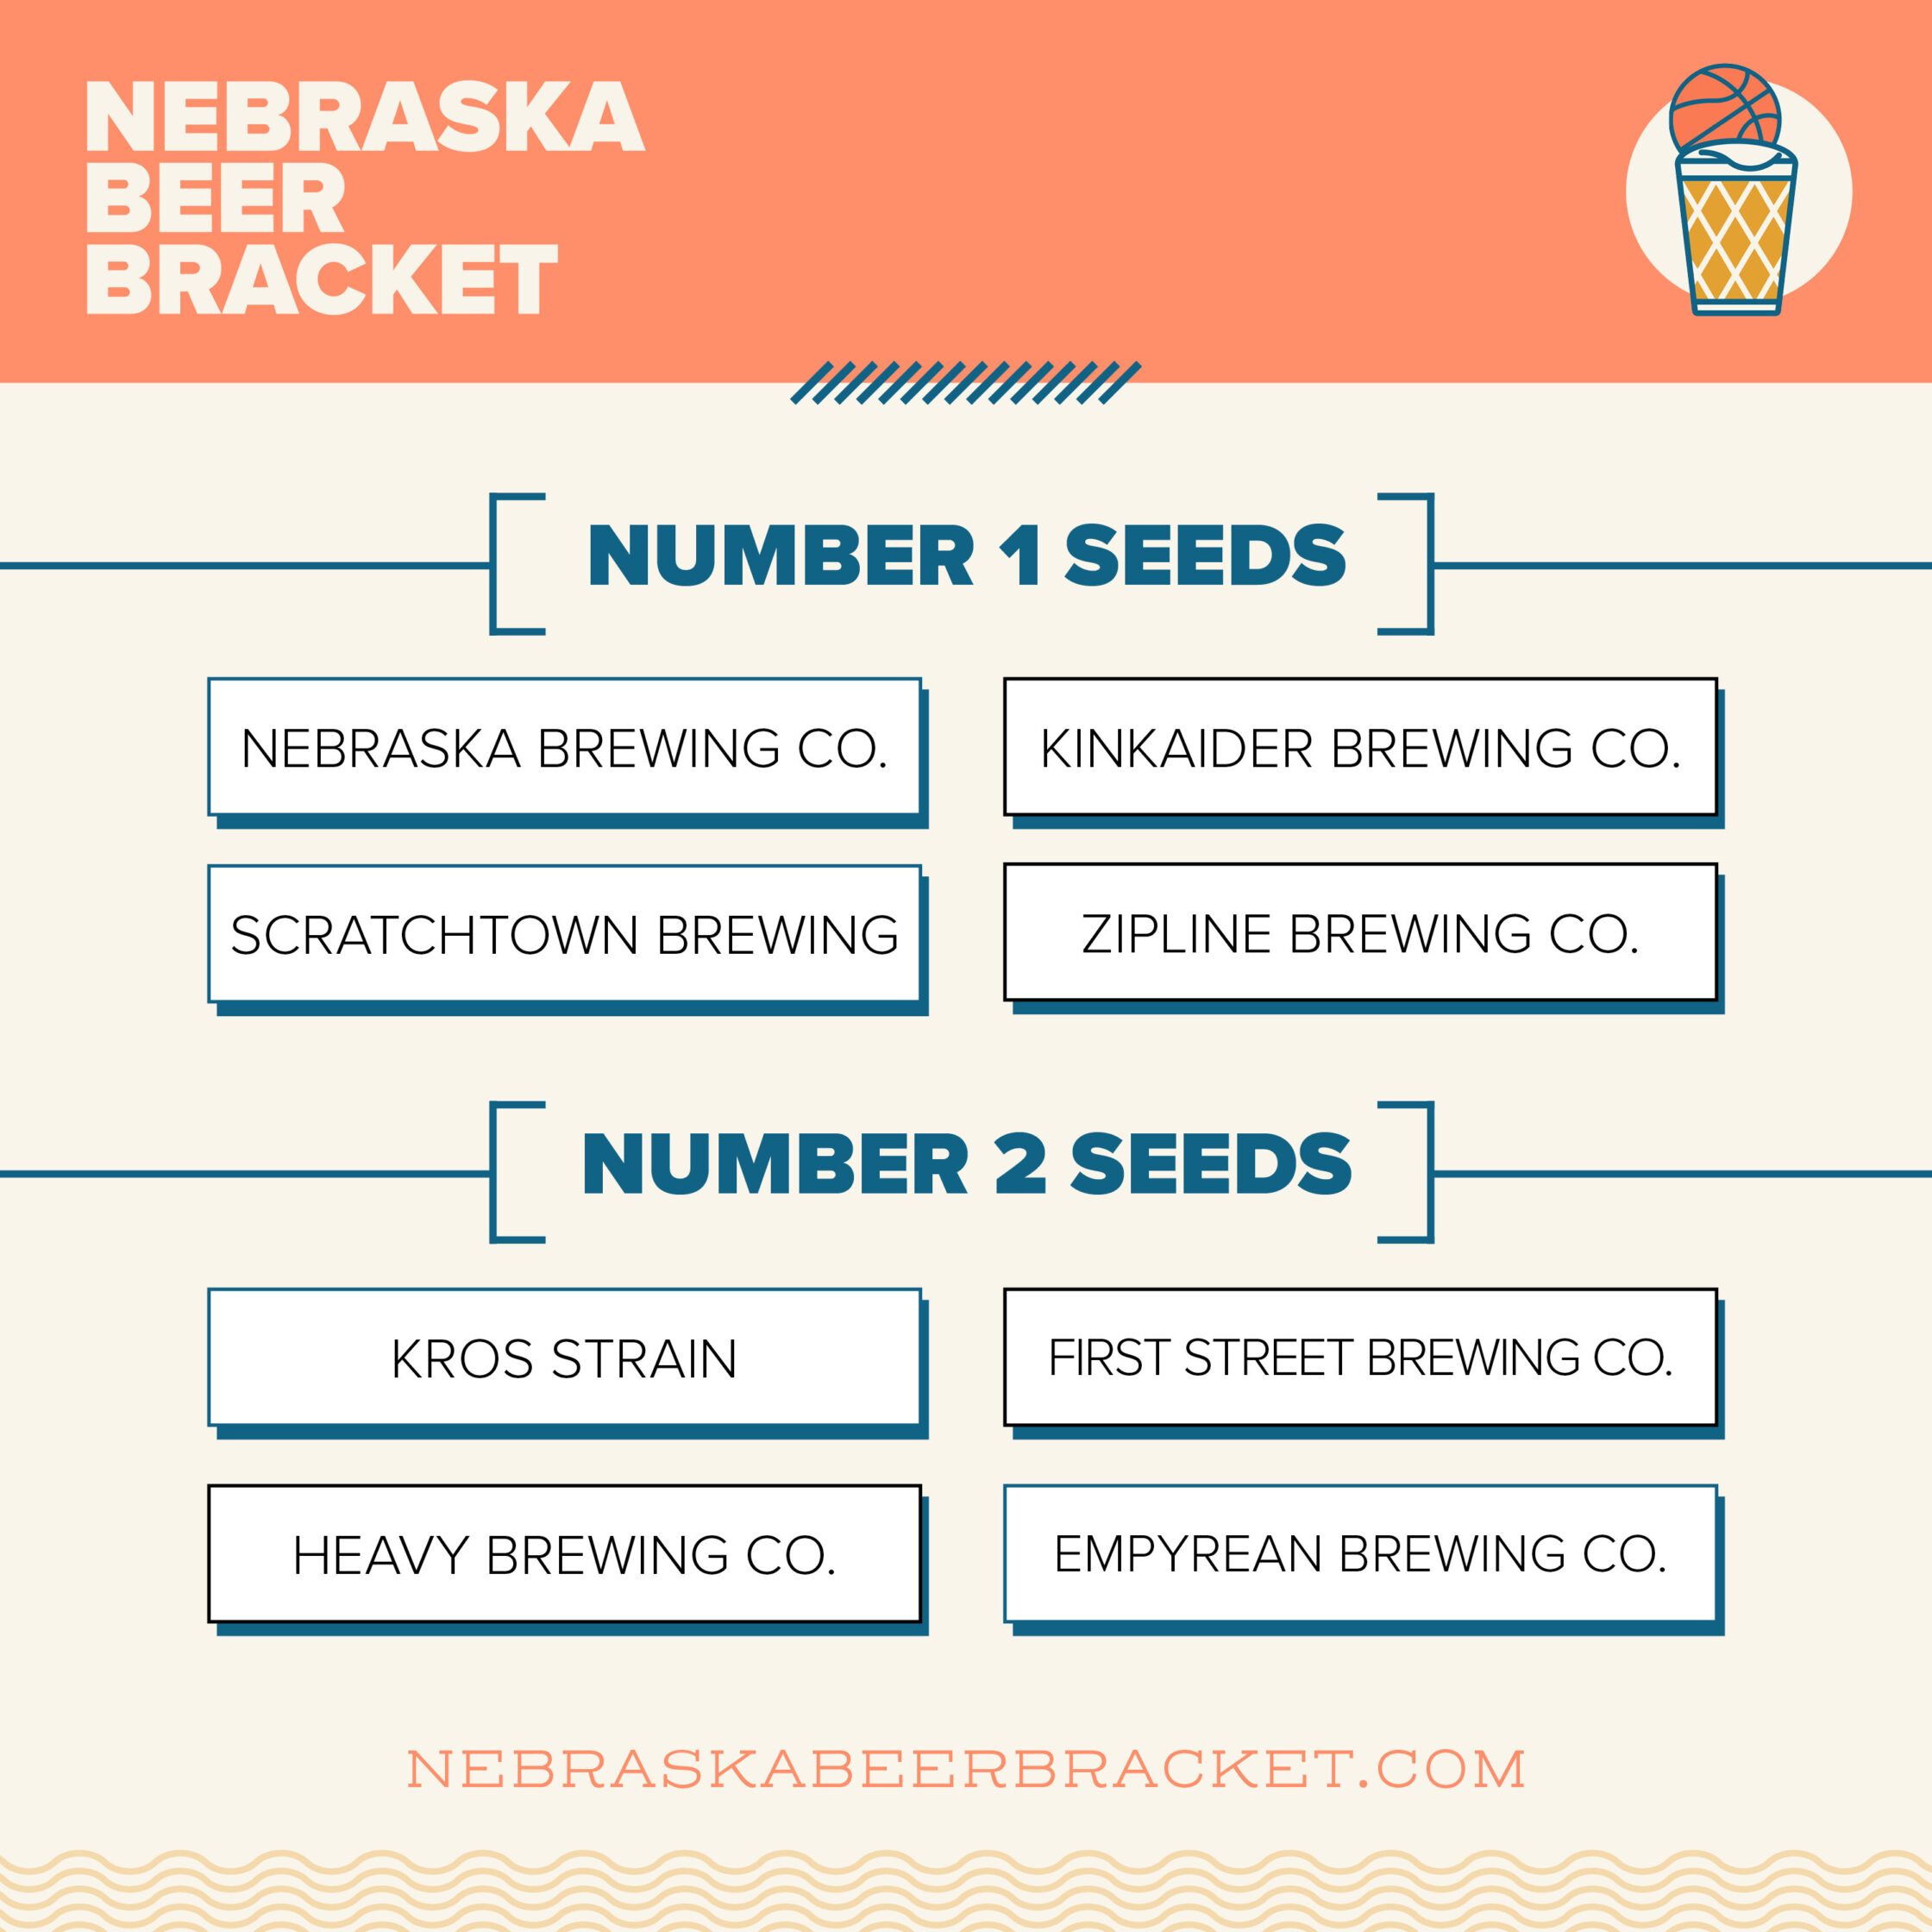 Voting is now open in the 2023 Nebraska Beer Bracket